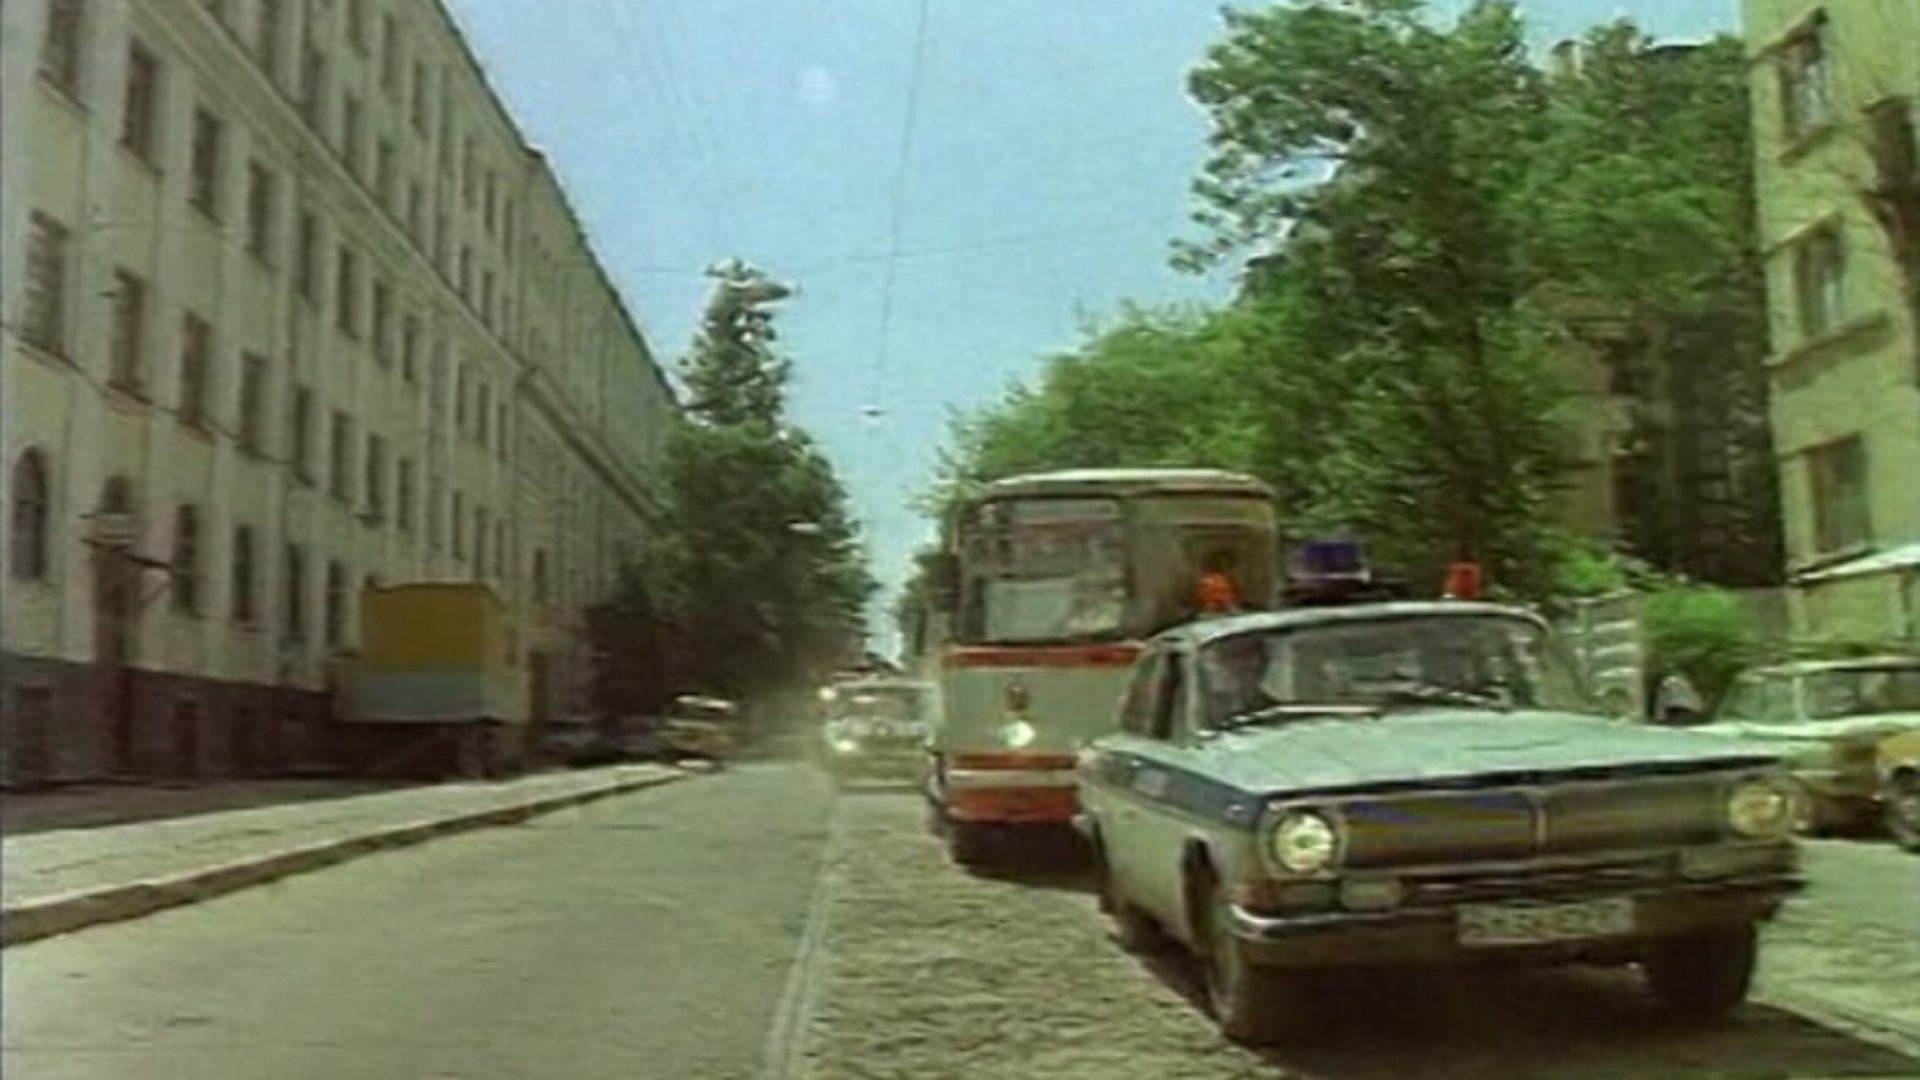 Автобус орджоникидзе 1988. Захват заложников в Орджоникидзе 1988. Захват школьников в Орджоникидзе 1988. Захват детей в Орджоникидзе в 1988 году. Орджоникидзе город в 1988 году.